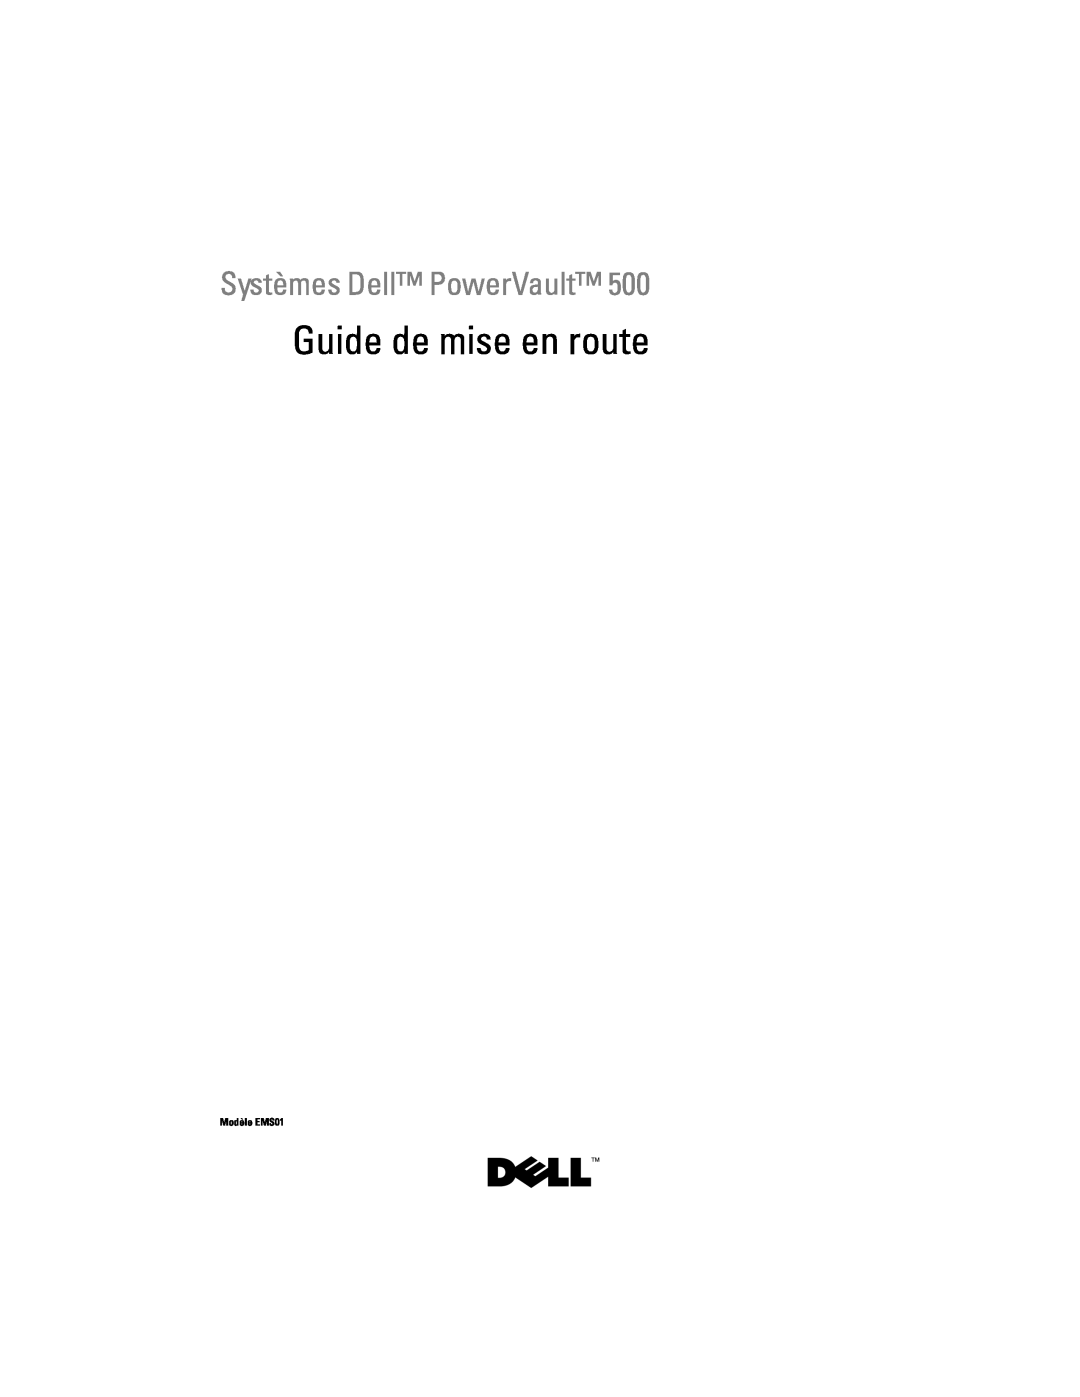 Dell YX154 manual Guide de mise en route, Systèmes Dell PowerVault, Modèle EMS01 